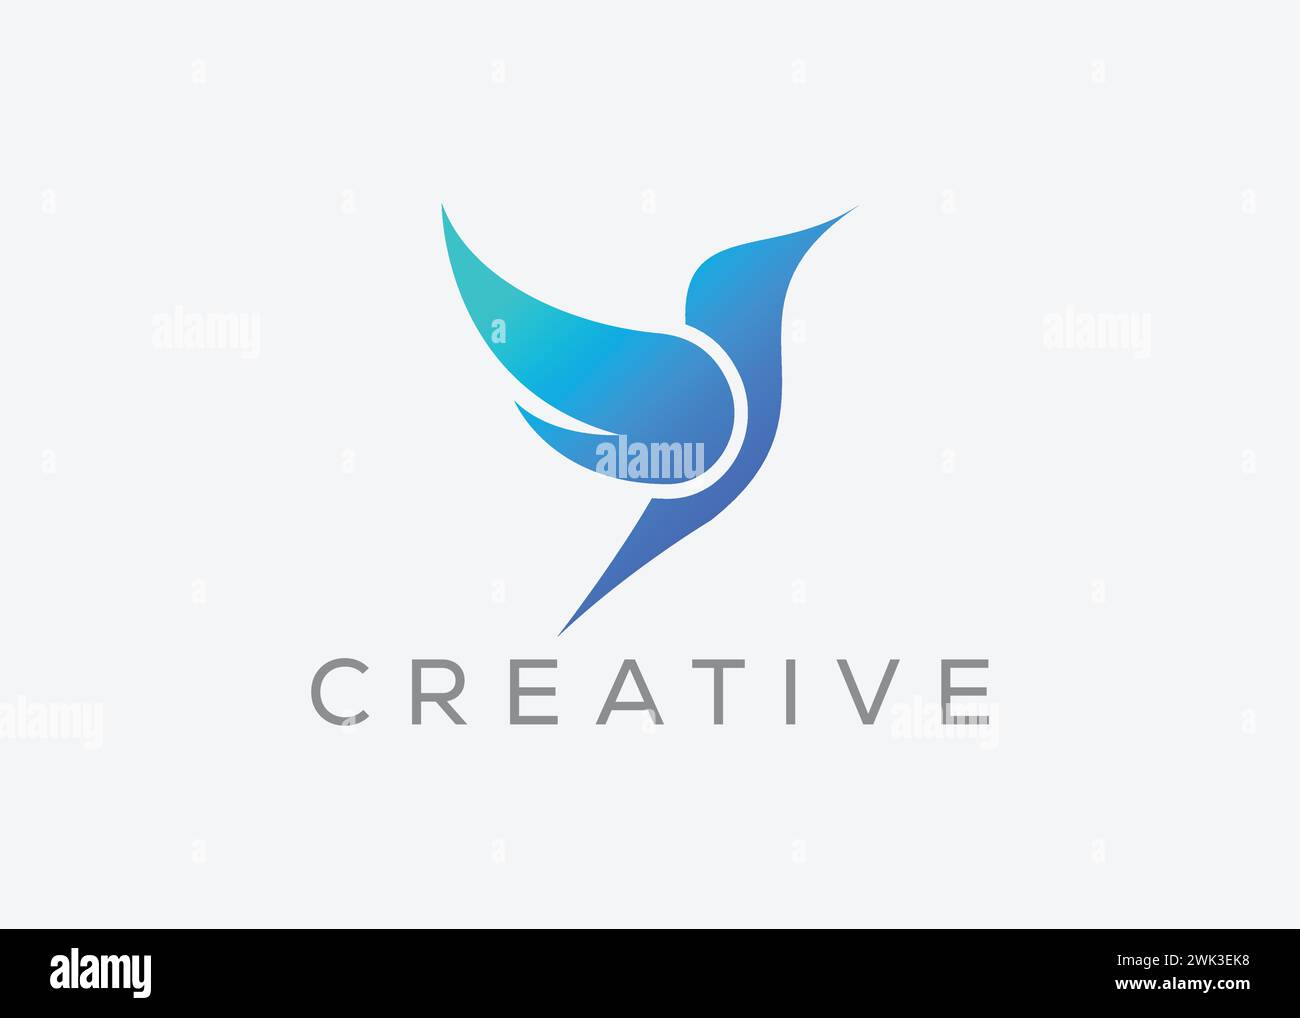 Modello di design creativo e minimale del logo vettoriale degli uccelli. Dove Flying. Vettore Pigeon Illustrazione Vettoriale